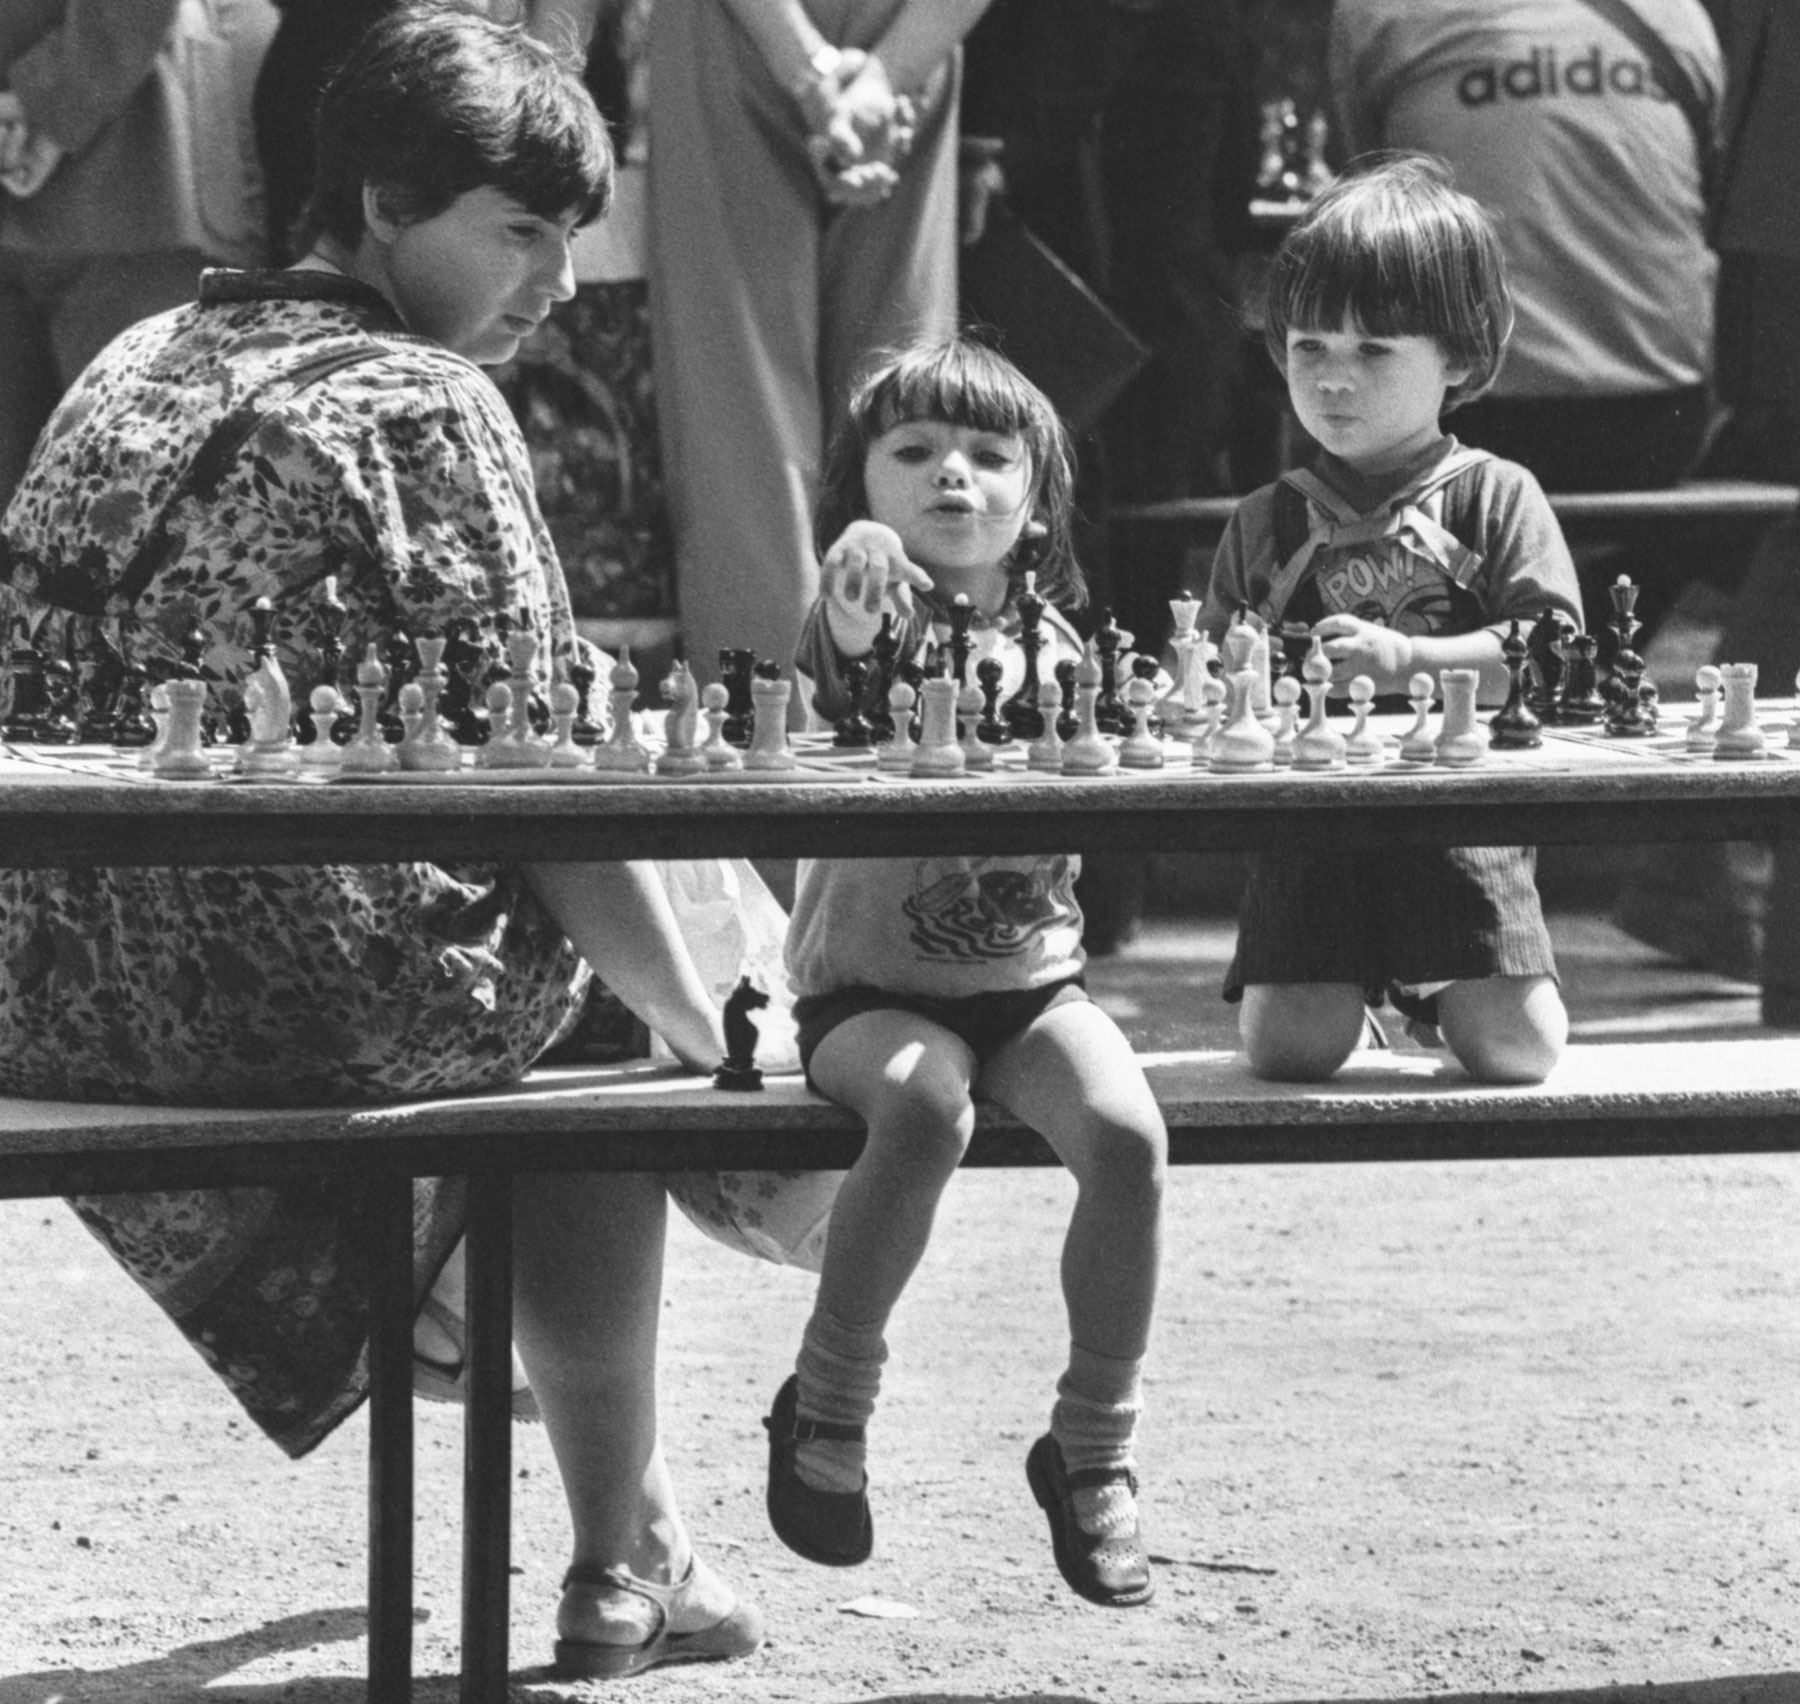 1988. Mladi sudionici šahovskog festivala na otvorenom u Moskvi